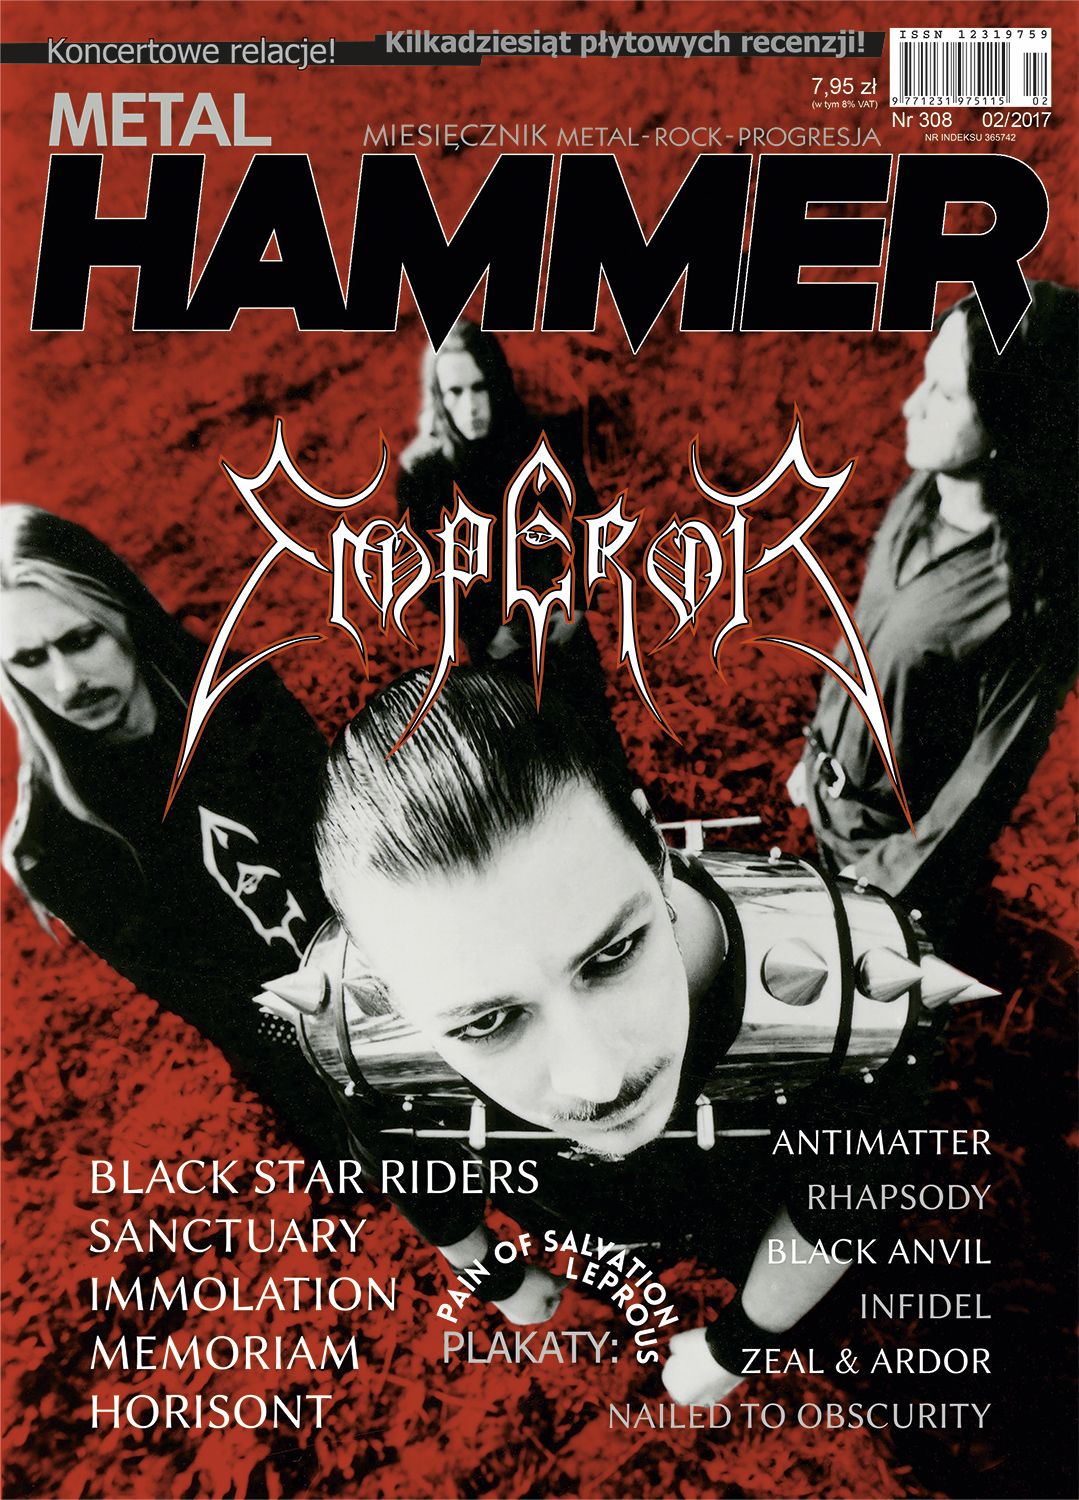 Lutowe wydanie Metal Hammera od dziś w sprzedaży!